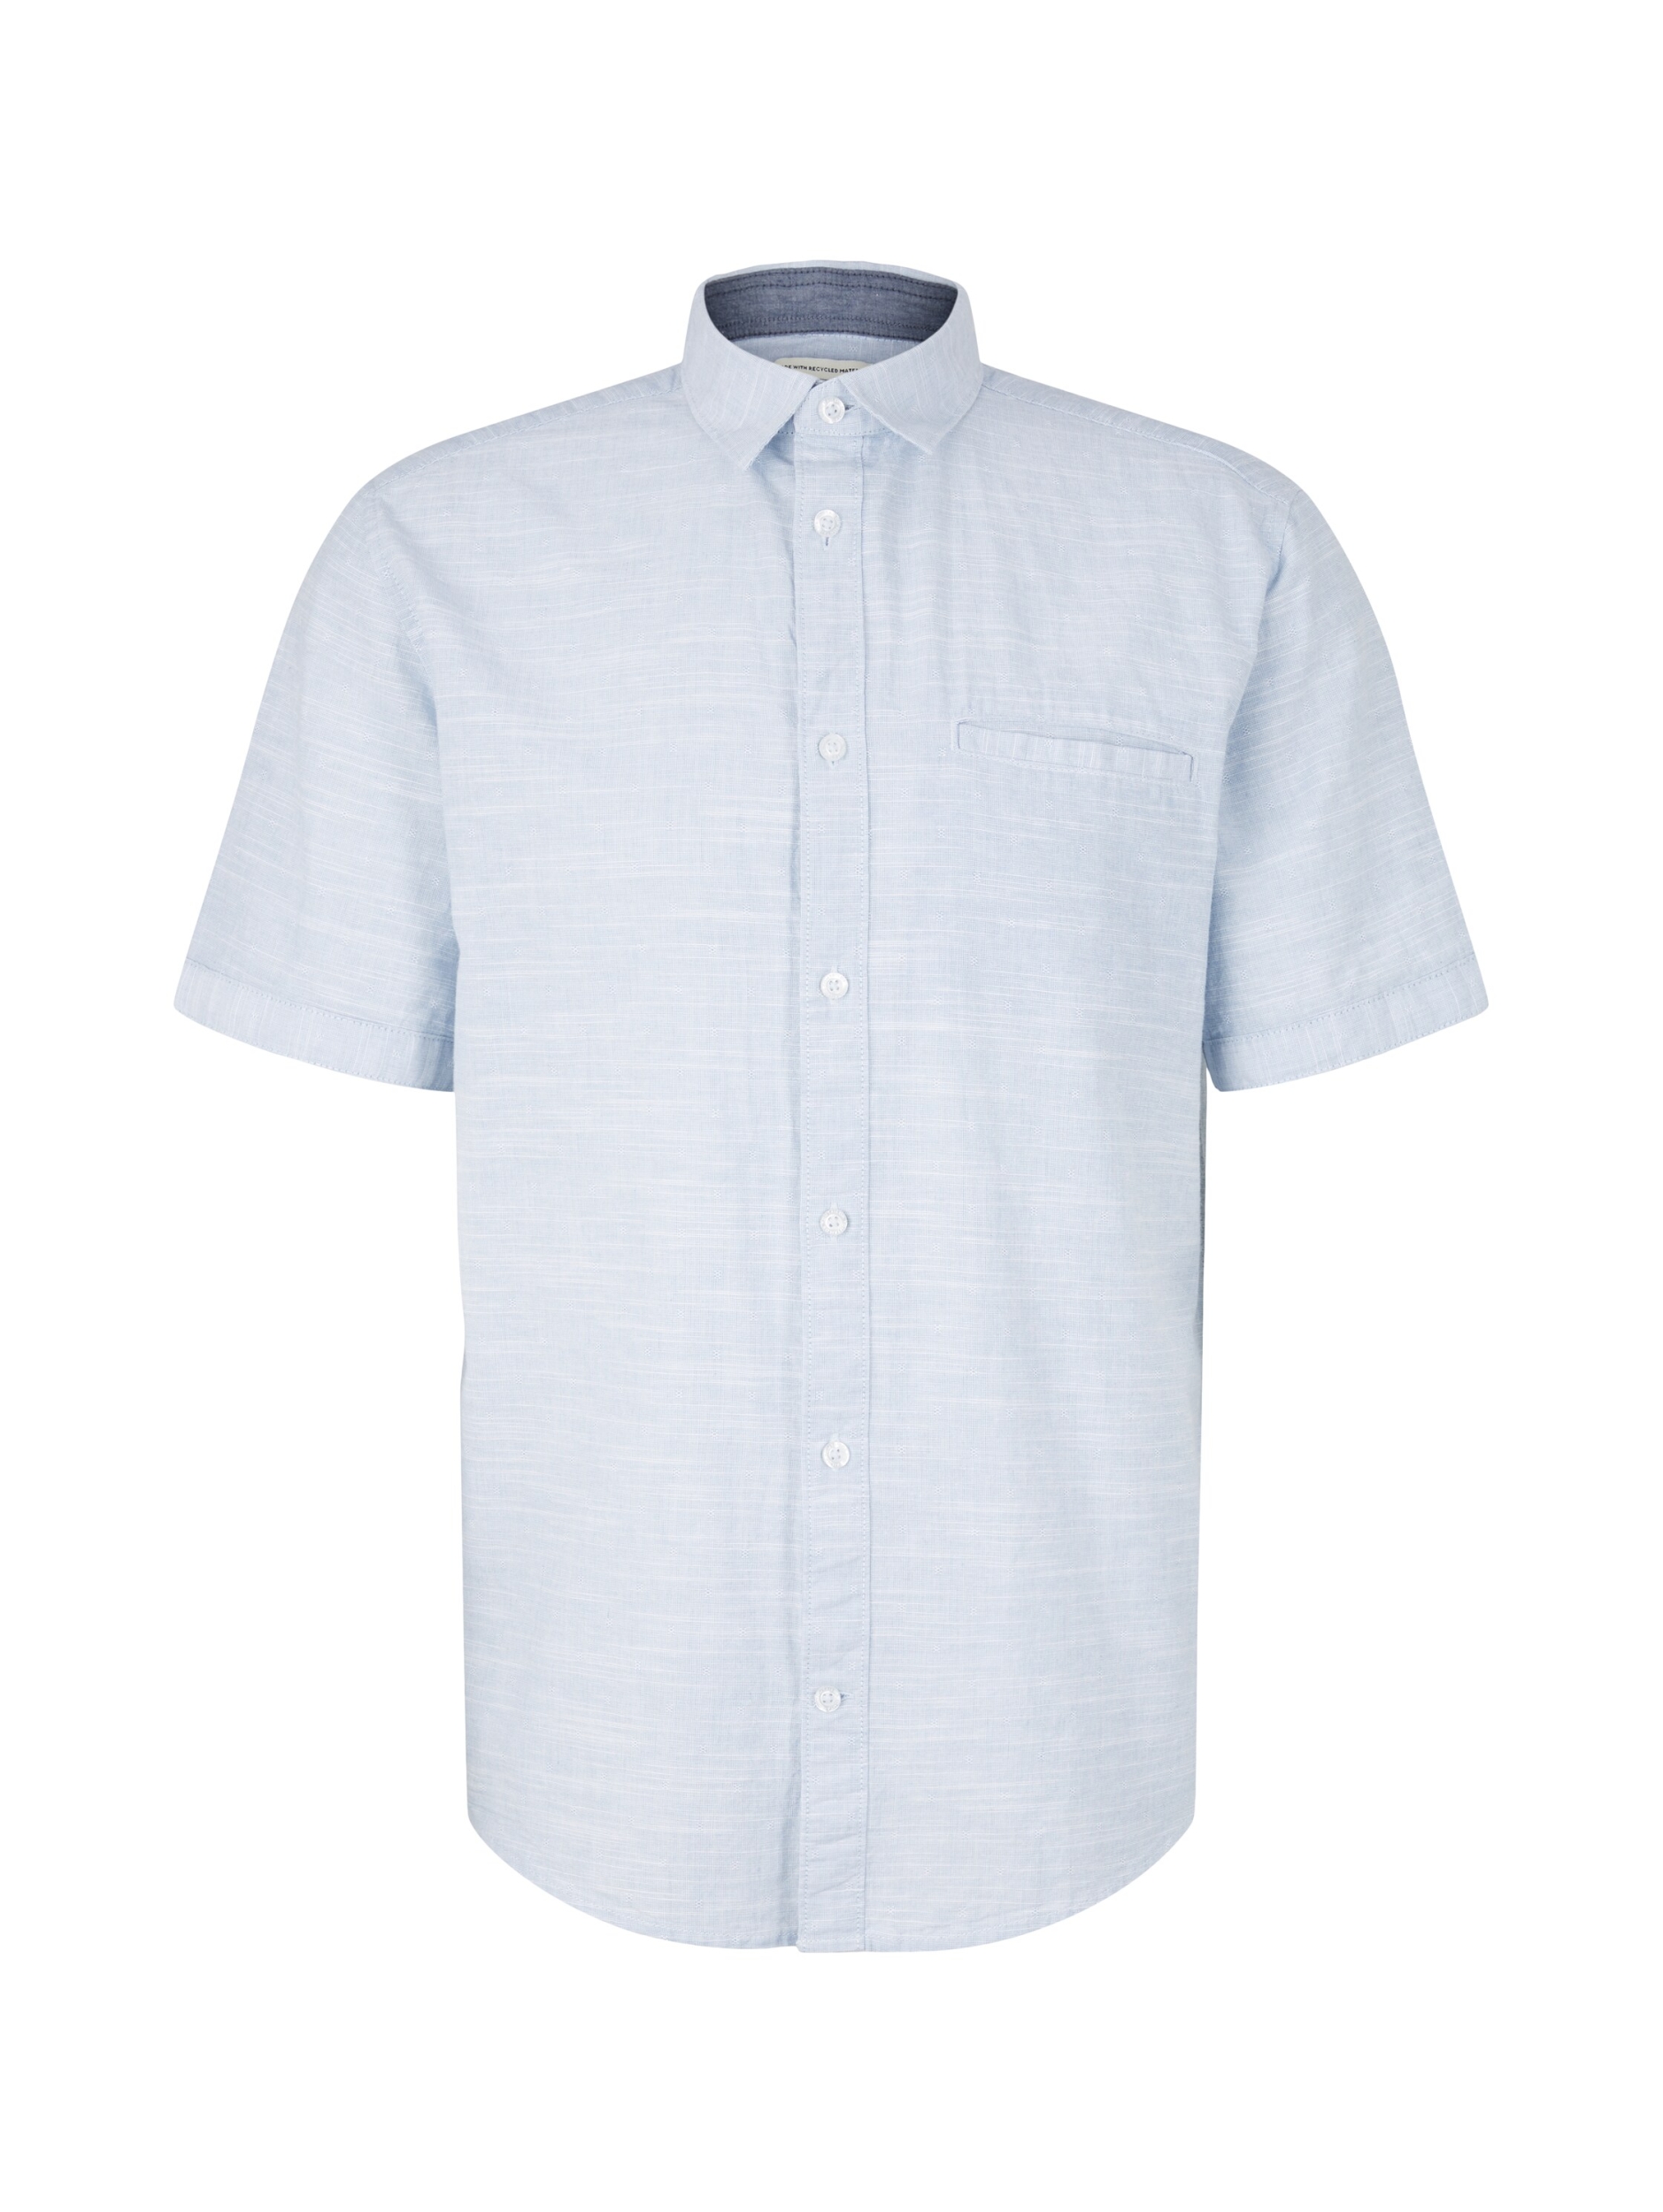 Kurzarm Hemd structured shirt